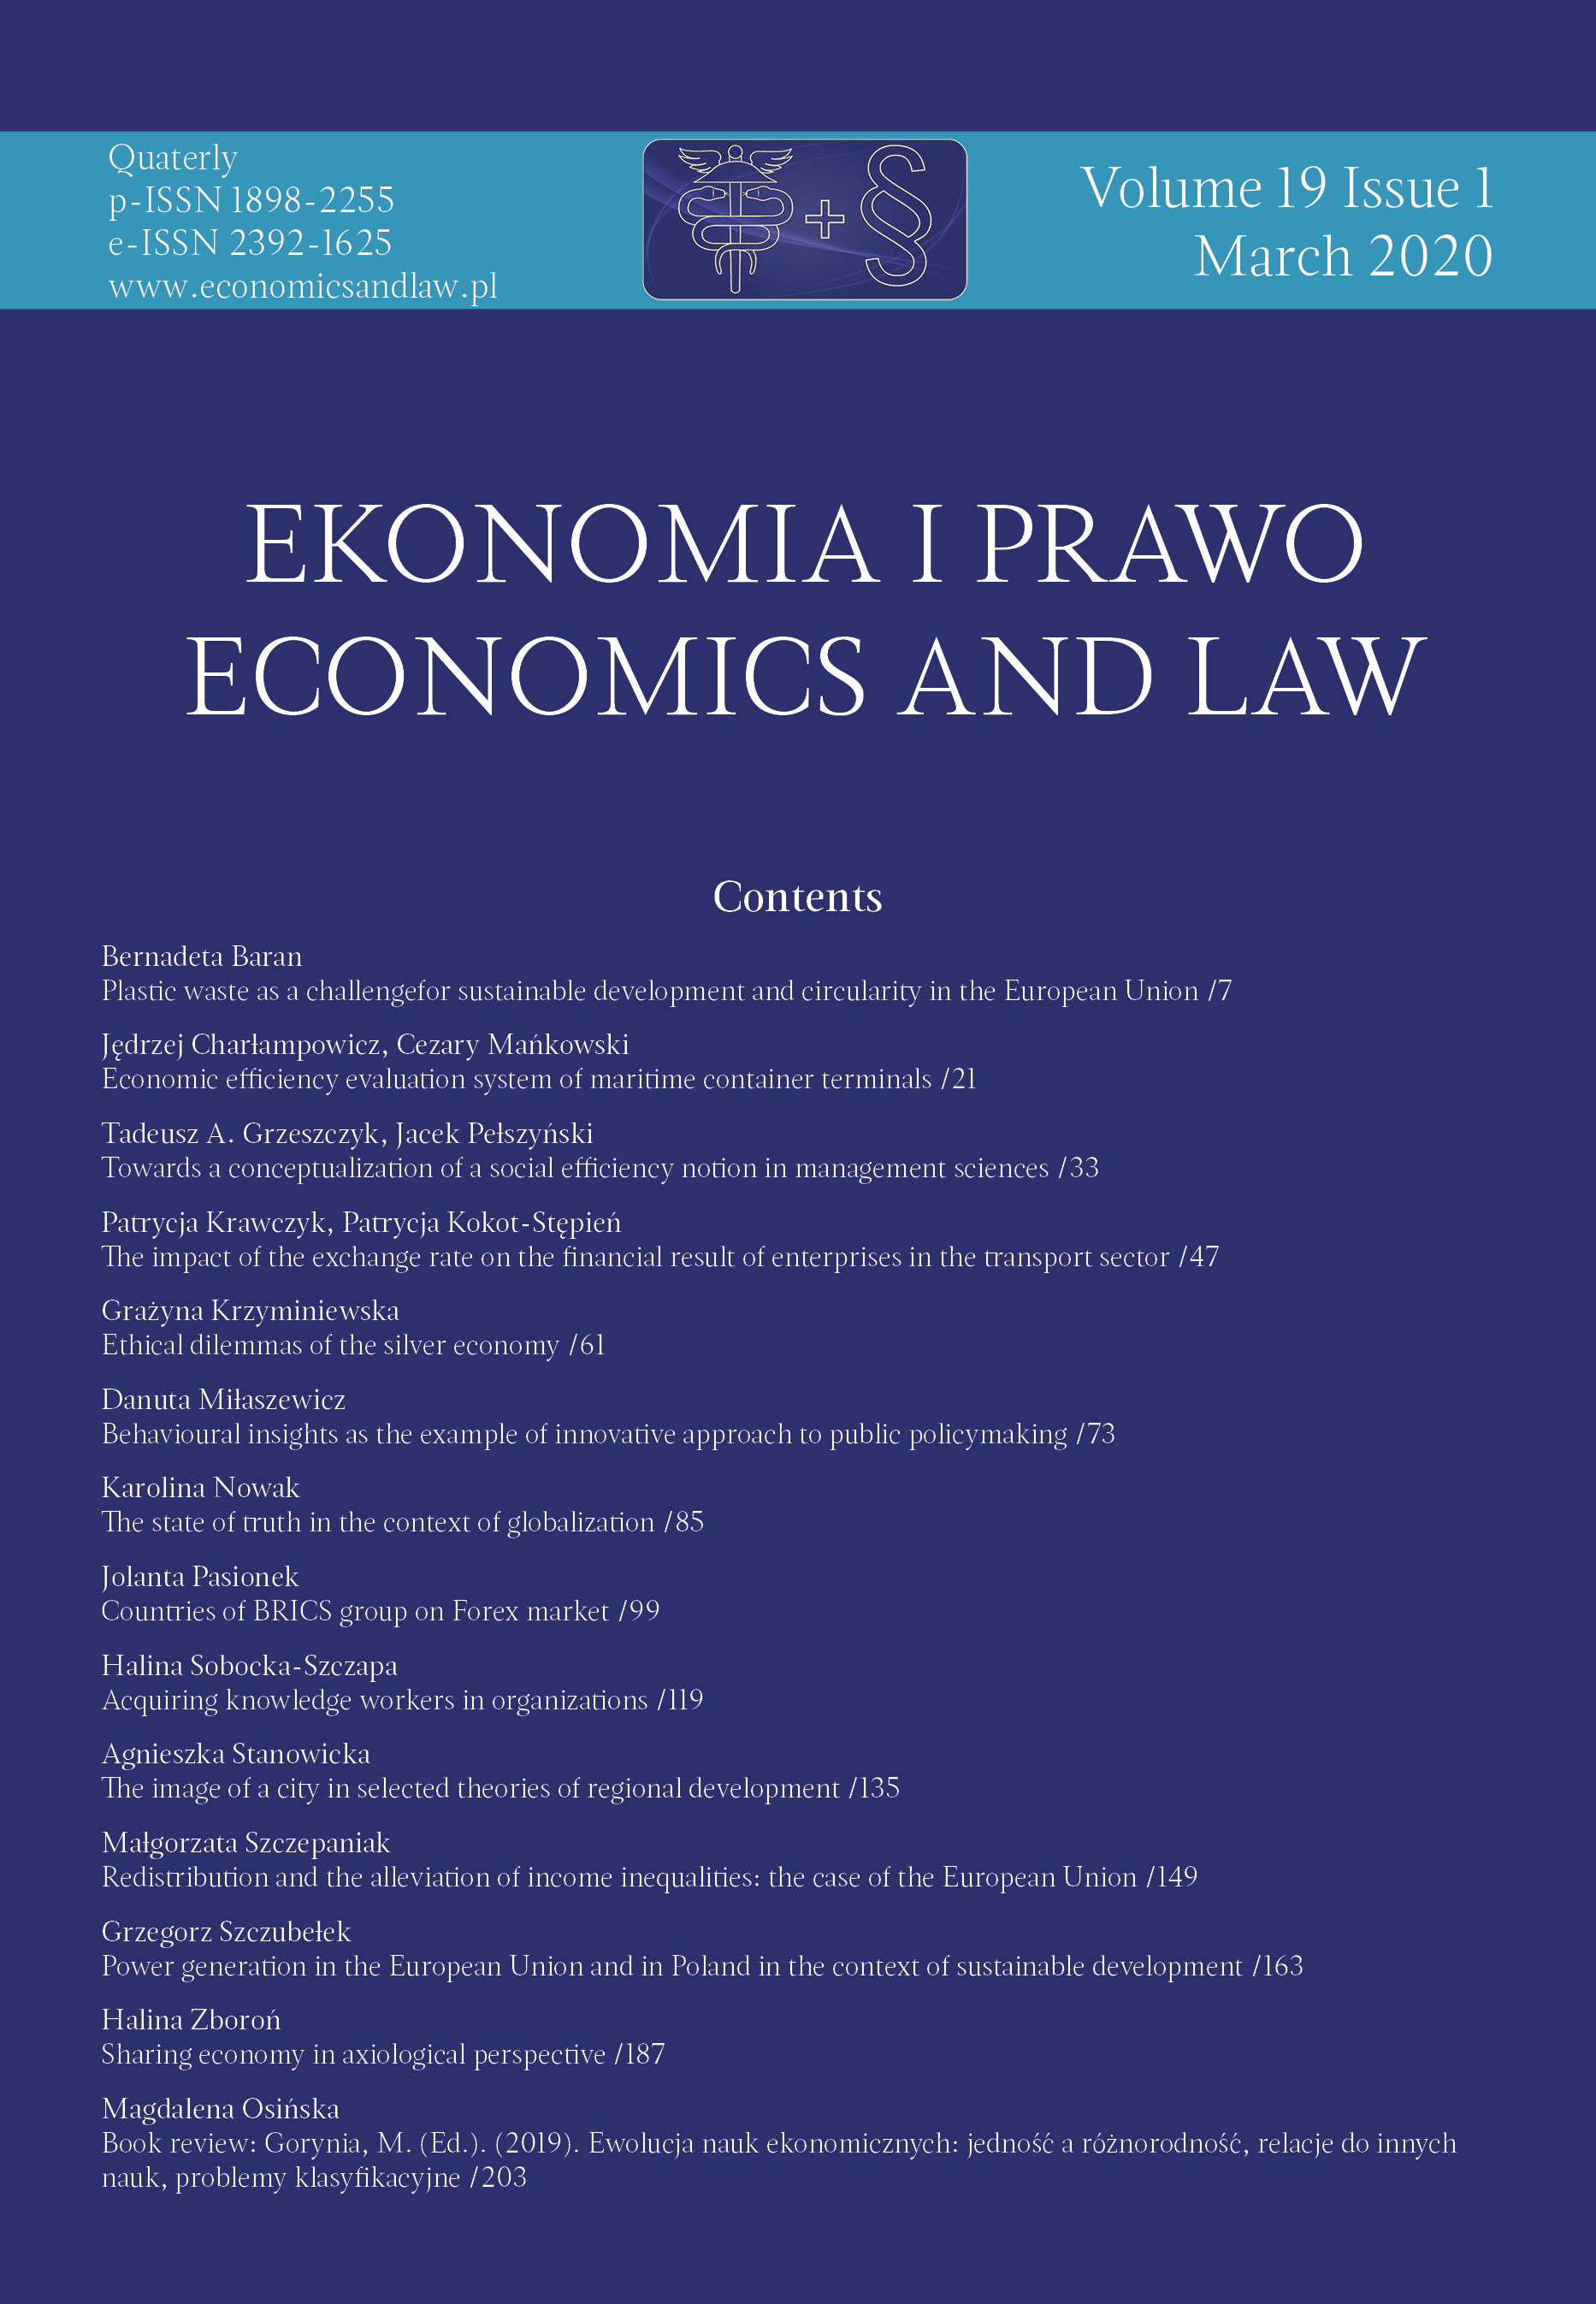 Book review: Gorynia, M. (Ed.). (2019). Ewolucja nauk ekonomicznych: jedność a różnorodność, relacje do innych nauk, problemy klasyfikacyjne